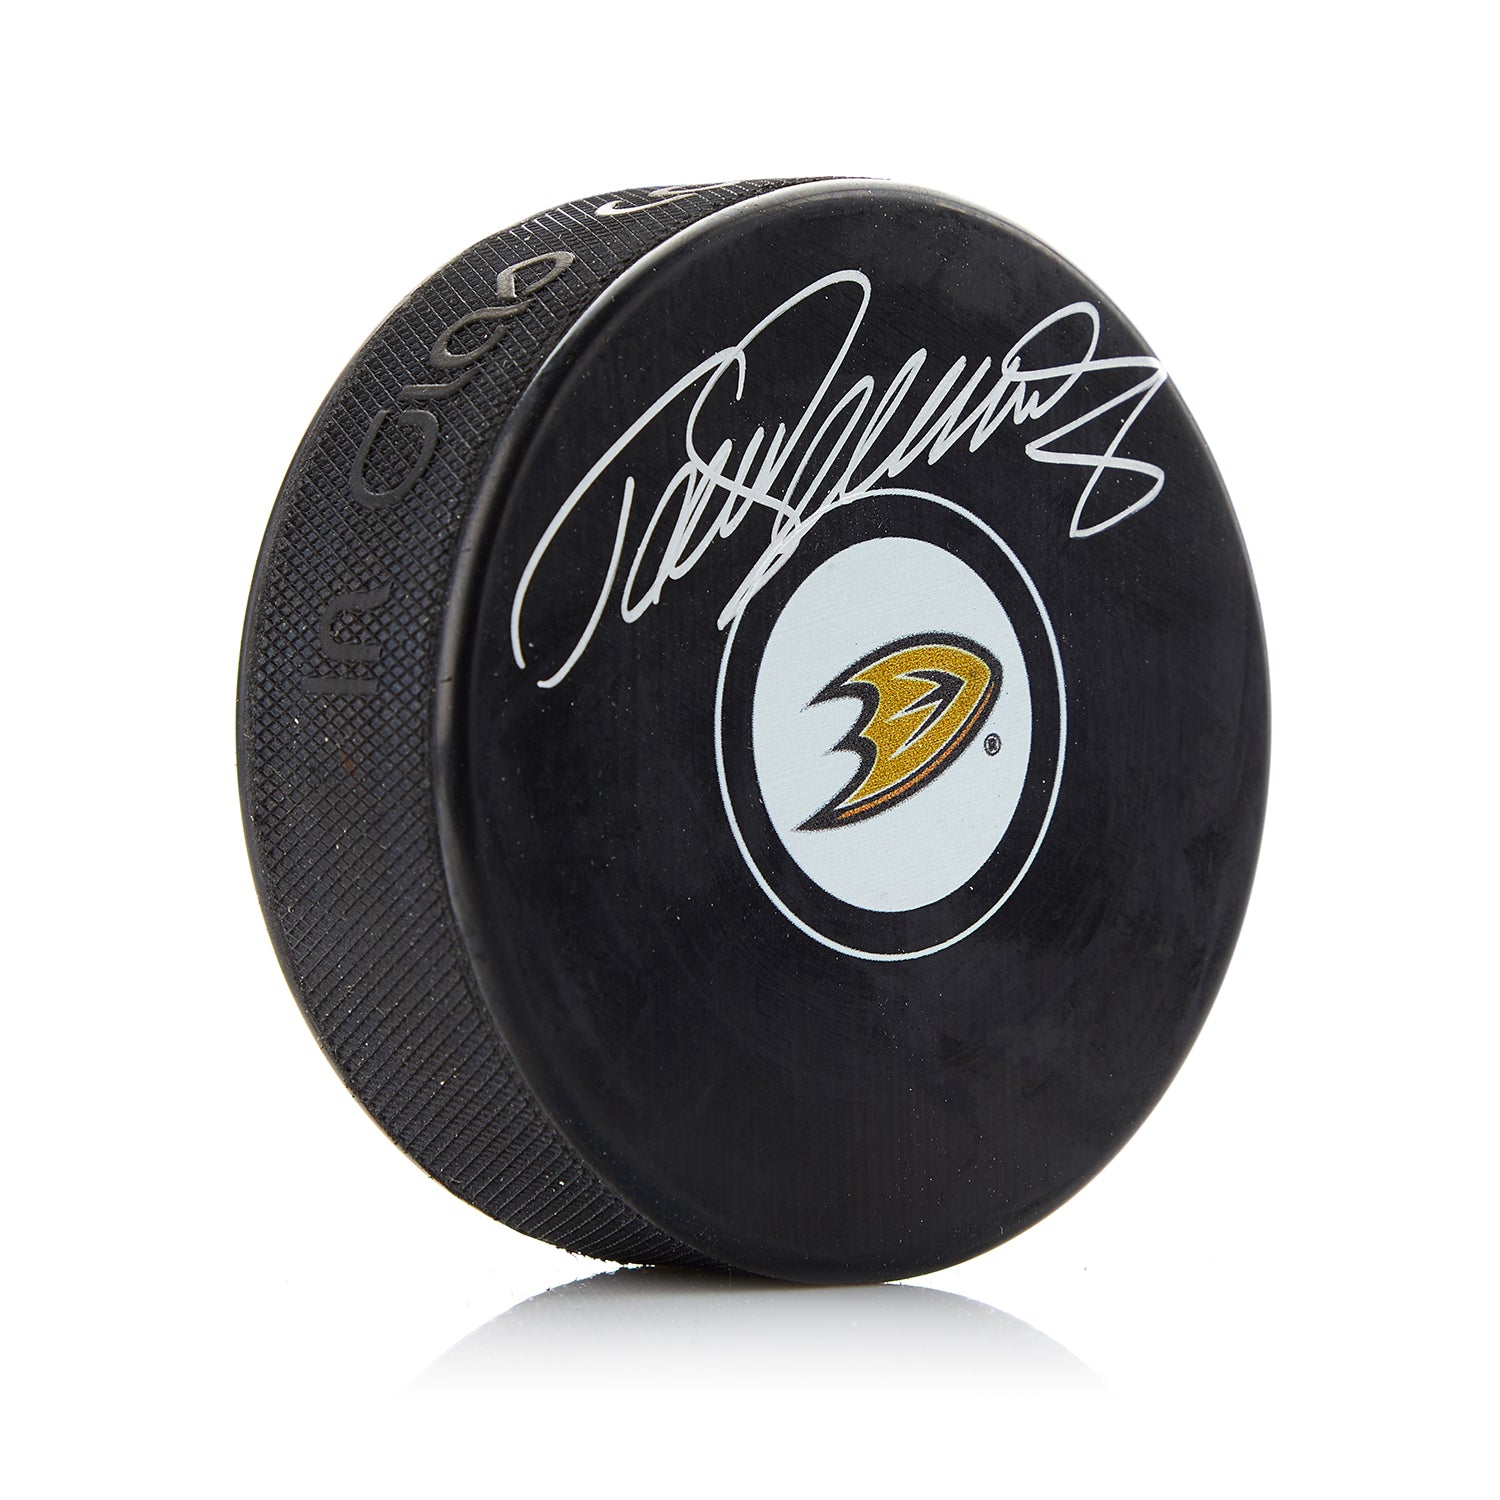 Teemu Selanne Autographed Anaheim Ducks Hockey Puck